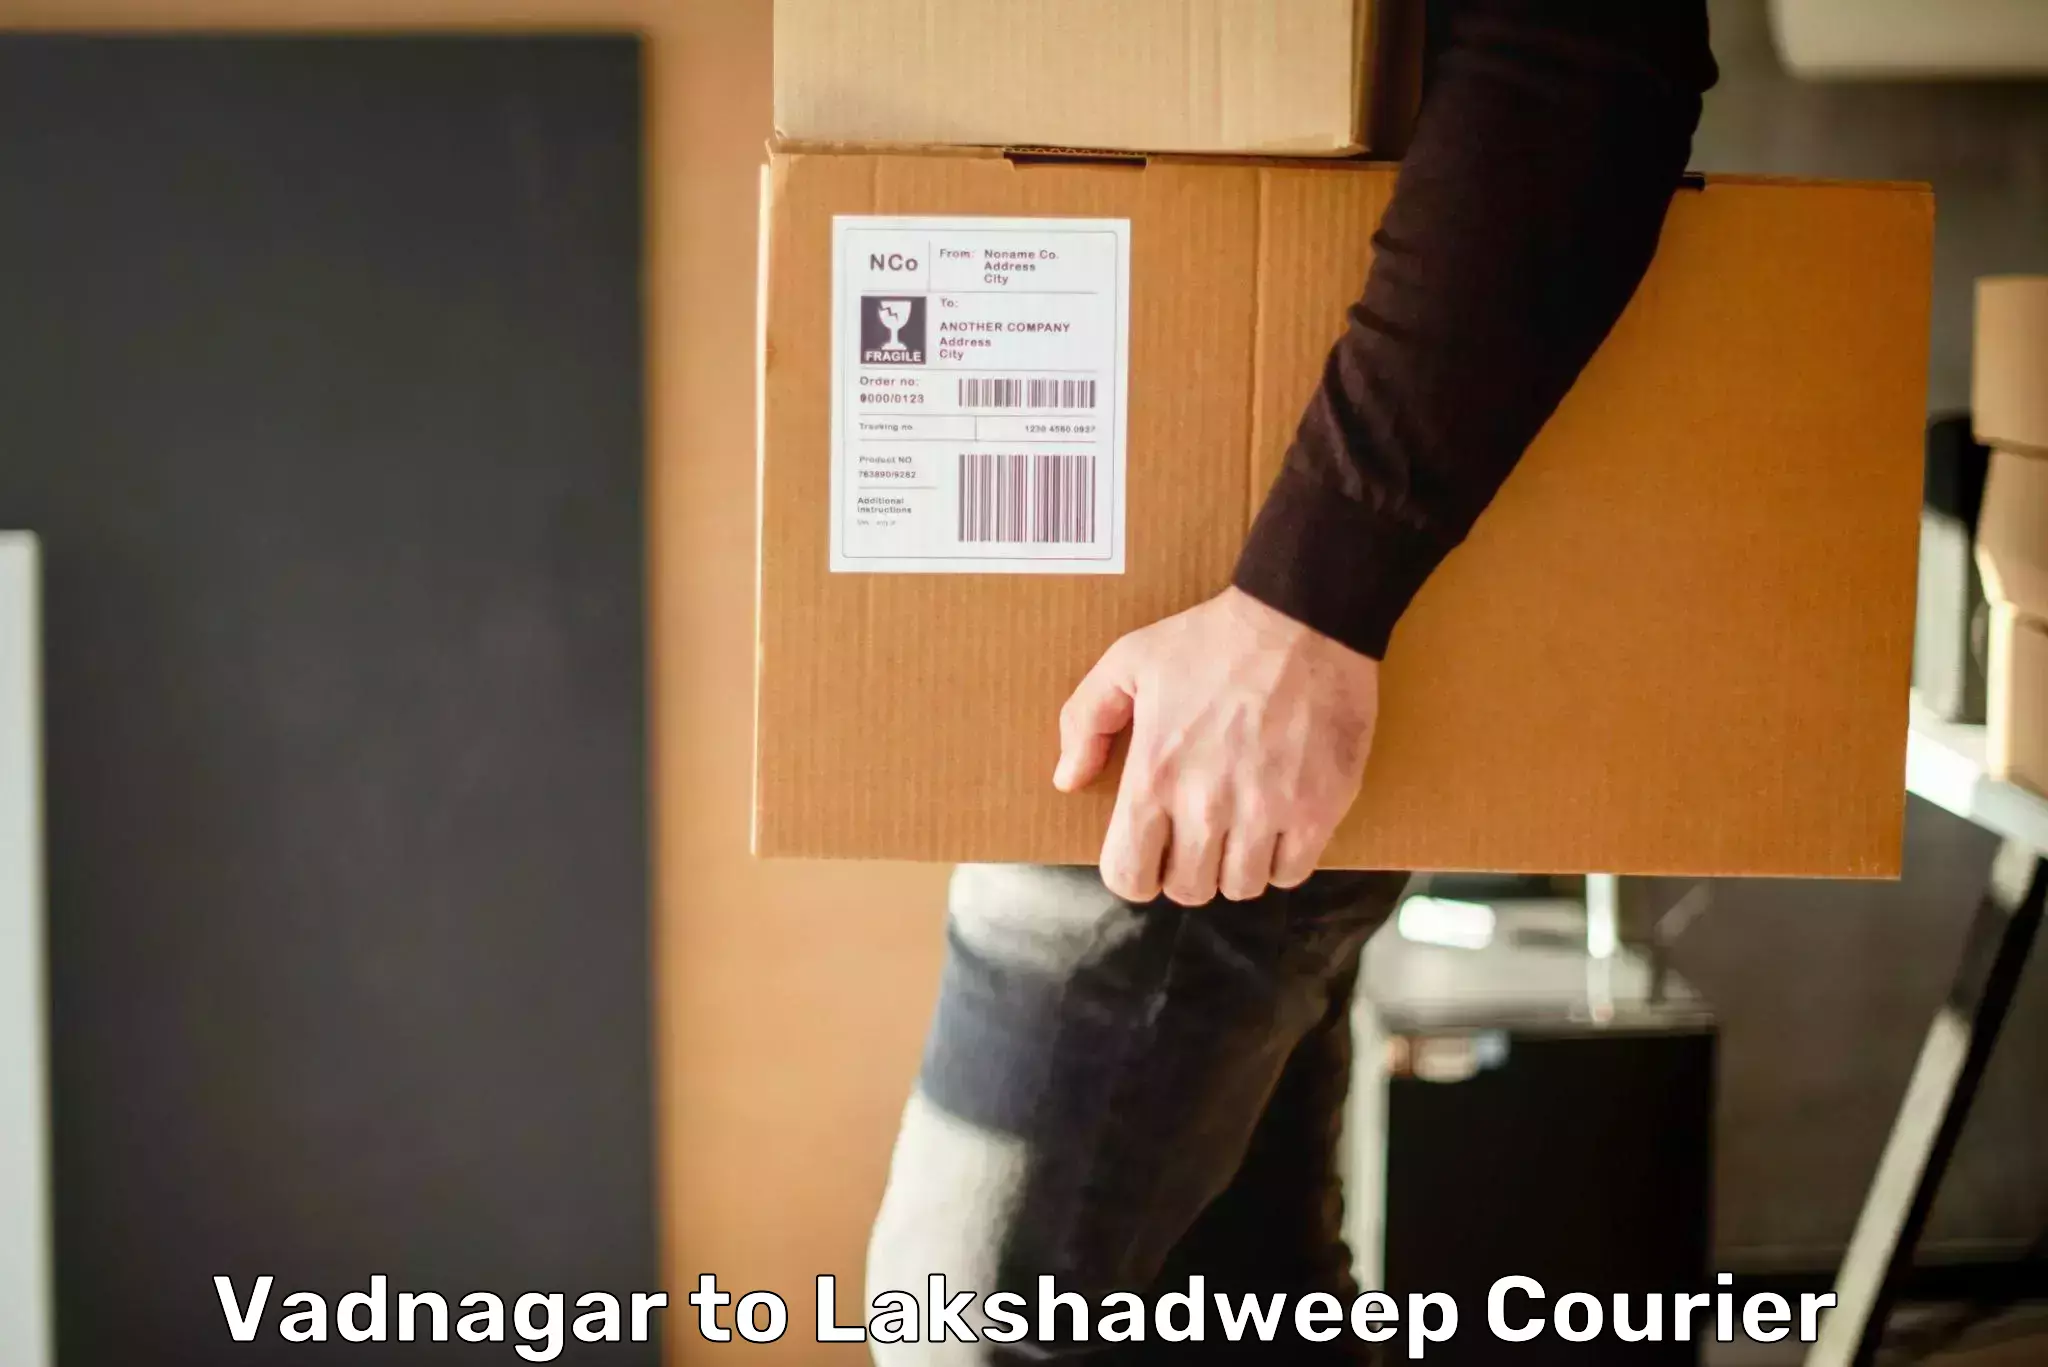 Fast-track shipping solutions Vadnagar to Lakshadweep